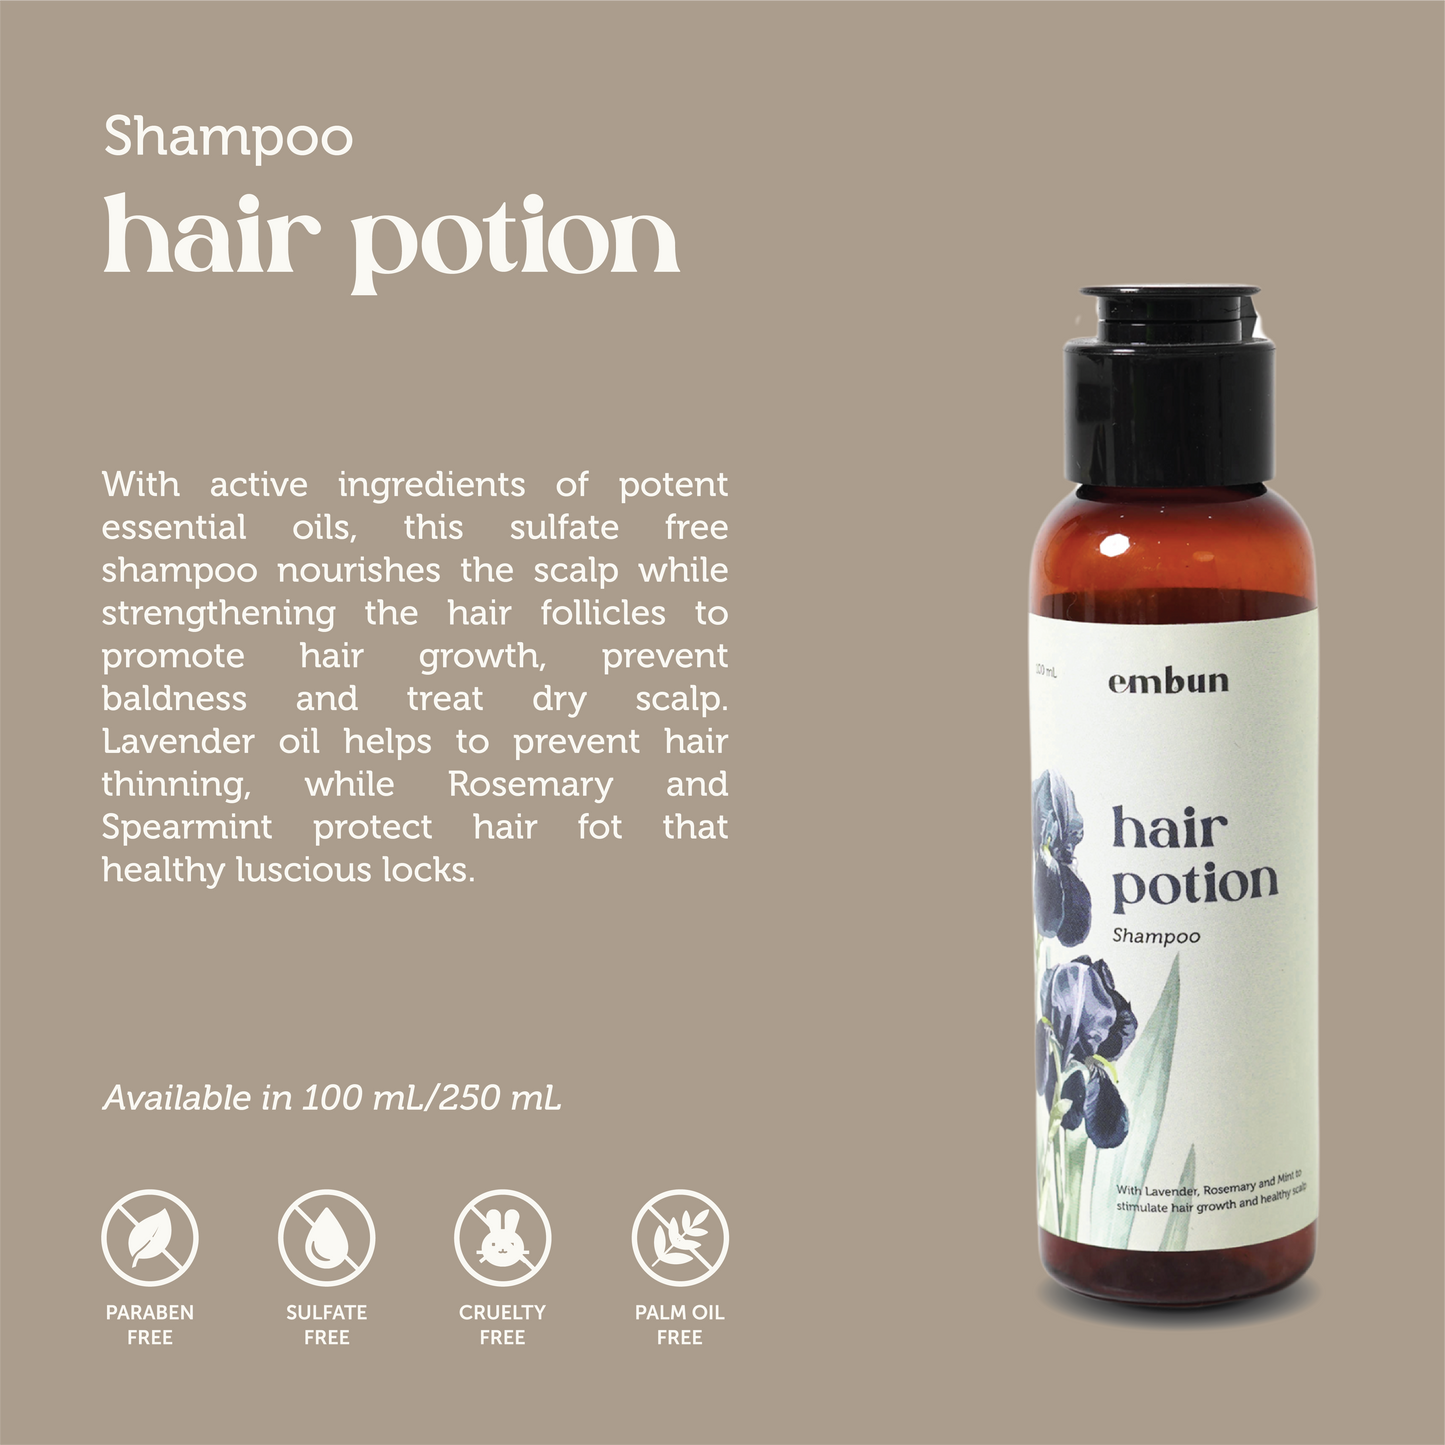 Shampoo Hair Potion